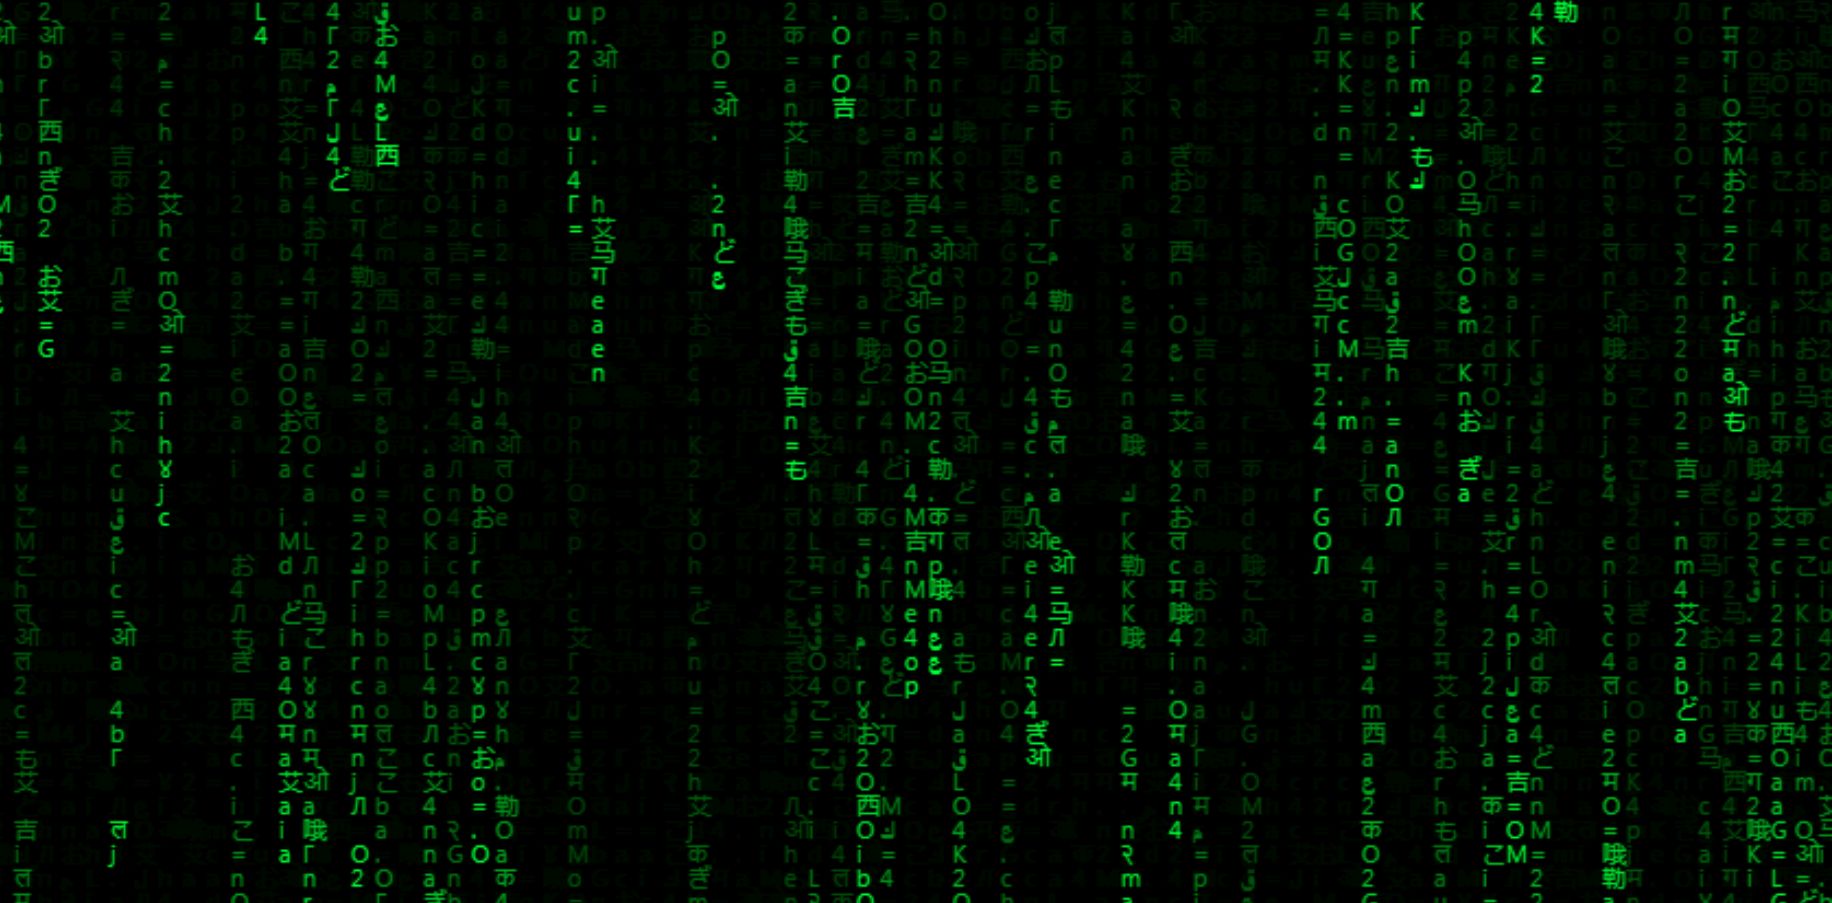 визуальный эффект из фильма Матрица, падающие иероглифы